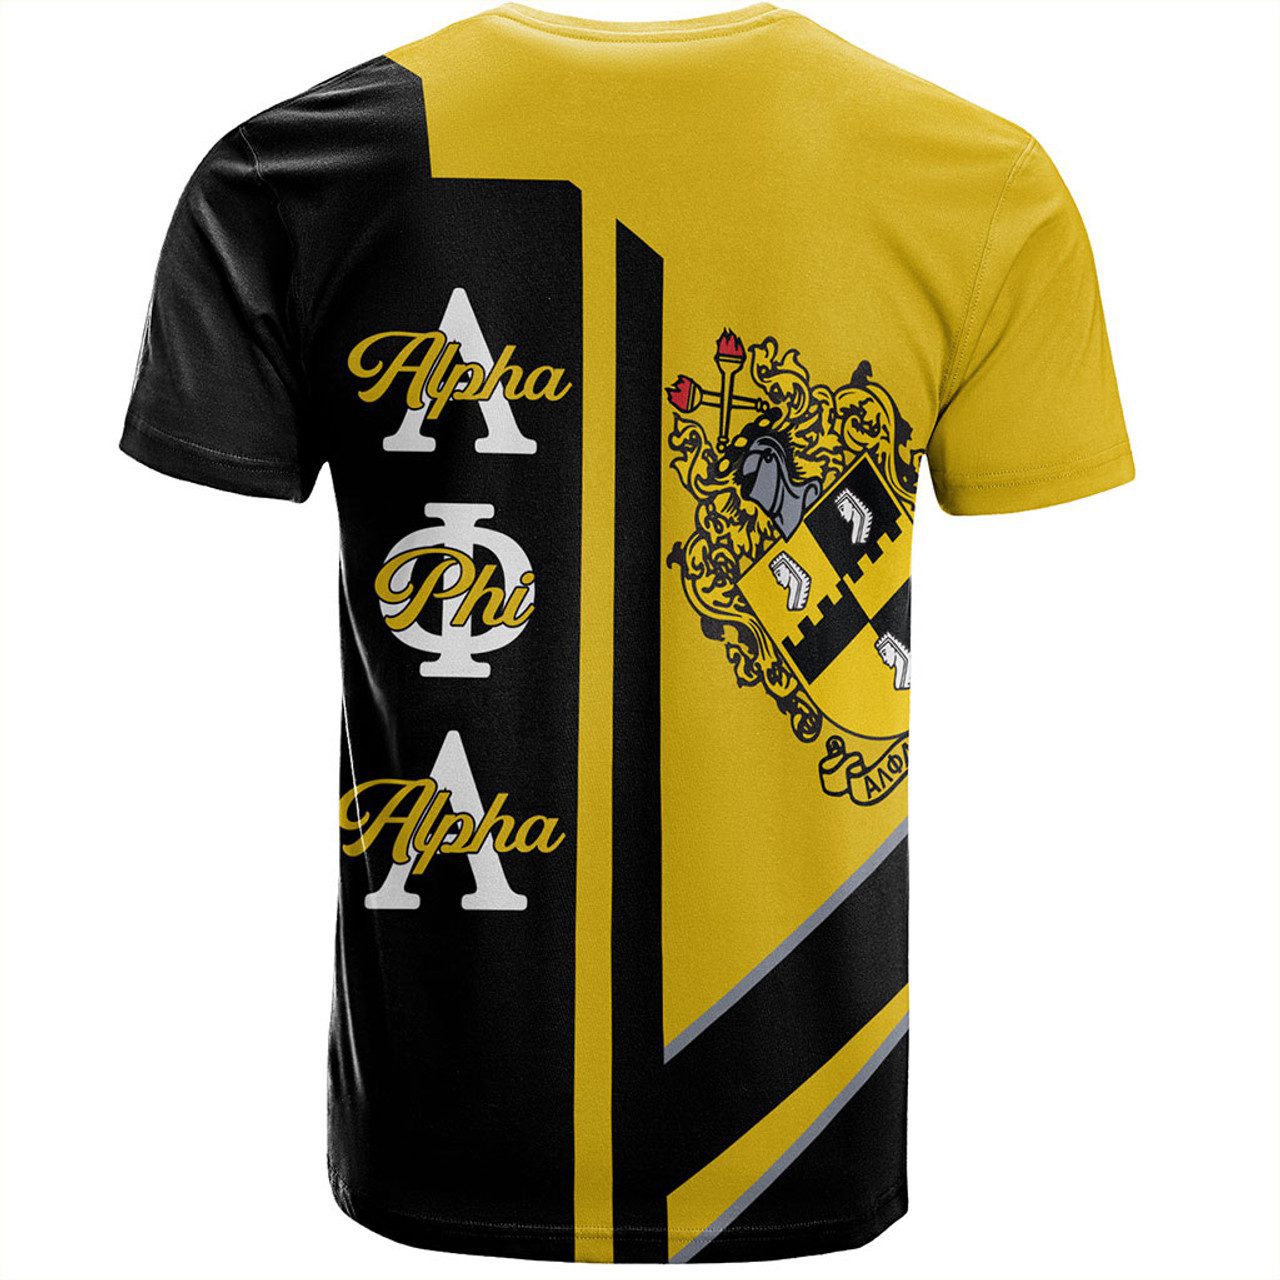 Alpha Phi Alpha T-Shirt Half Concept